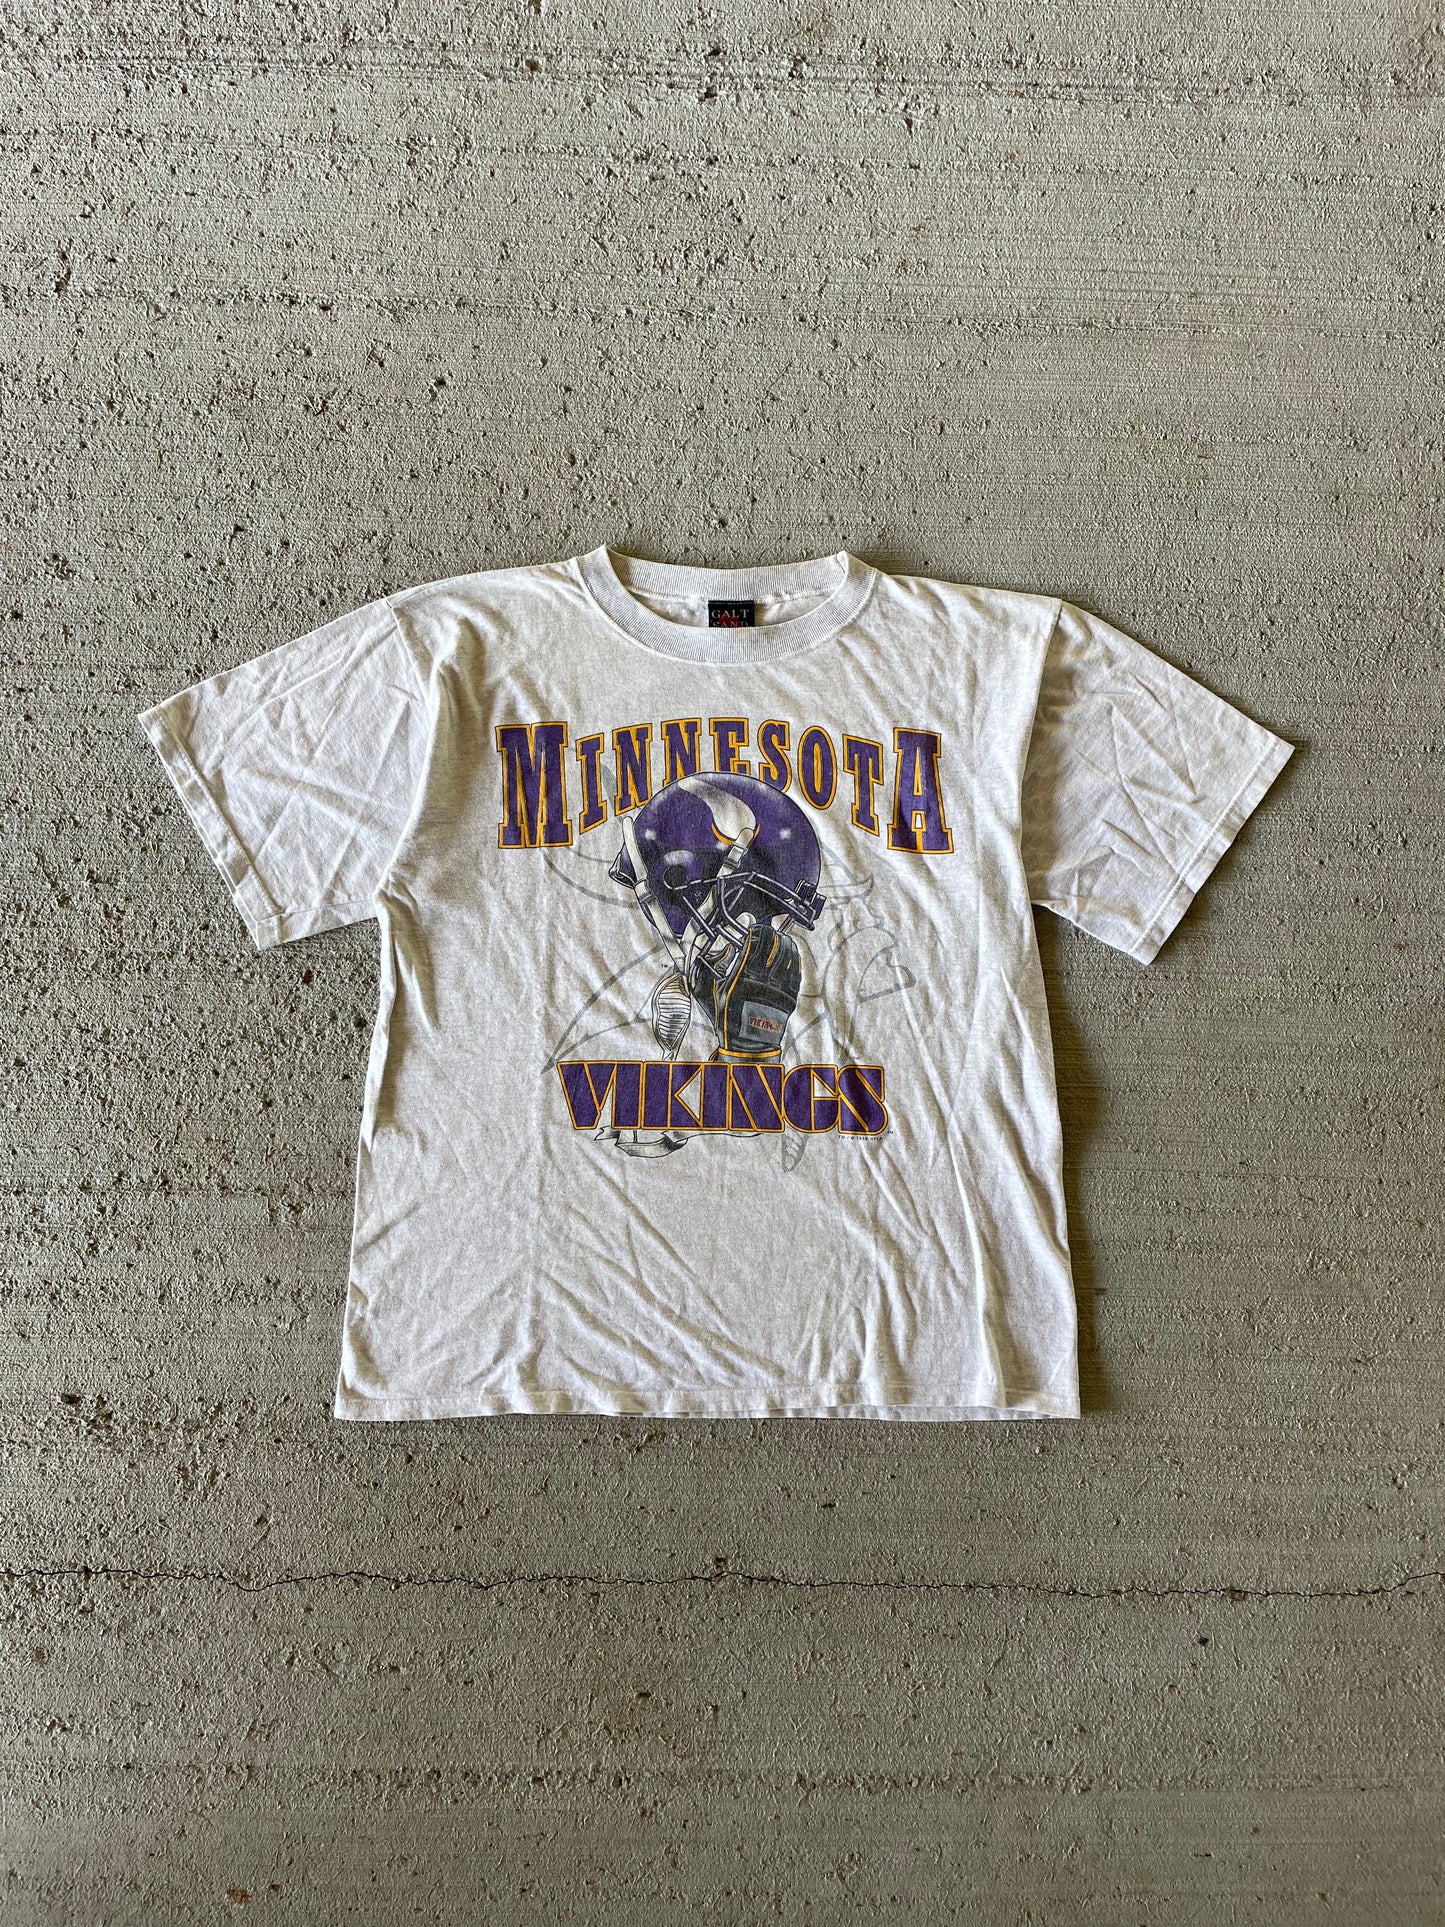 1996 Minnesota Vikings Tee